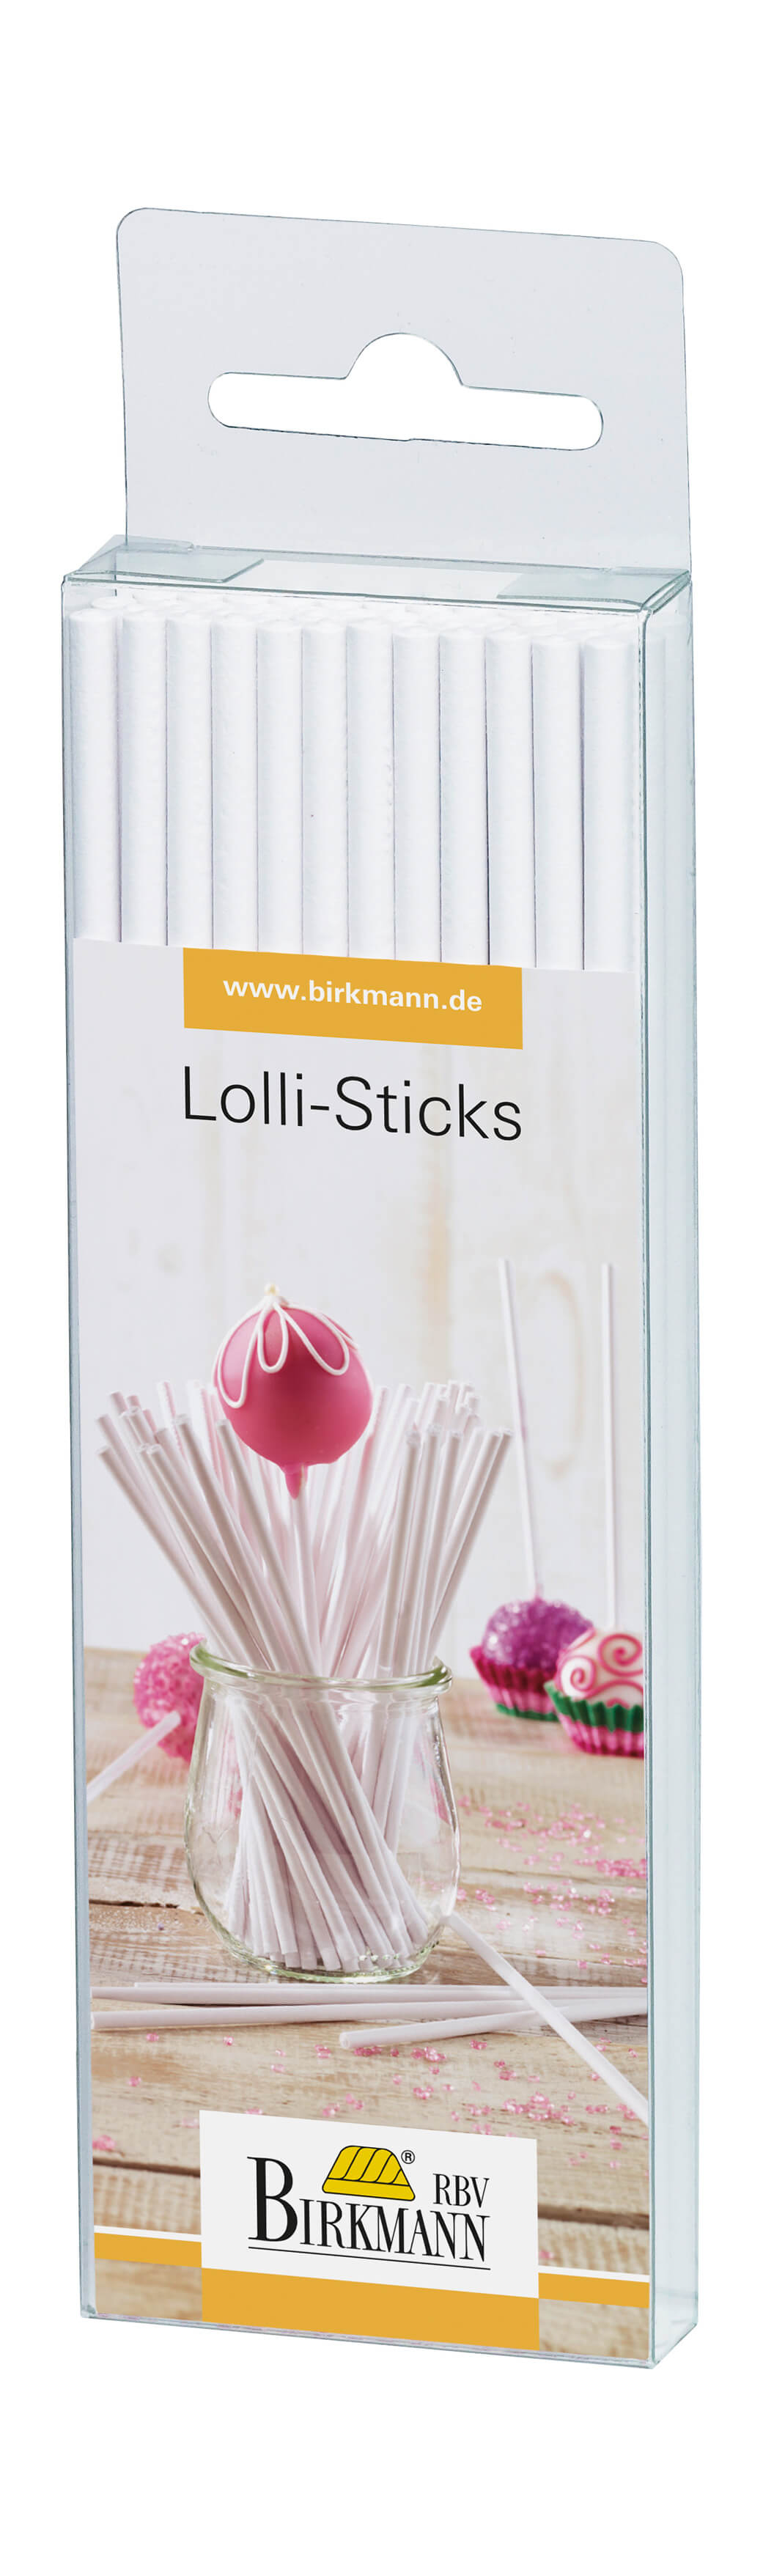 Lolli-Sticks für Cakepops weiß, 48 Stück